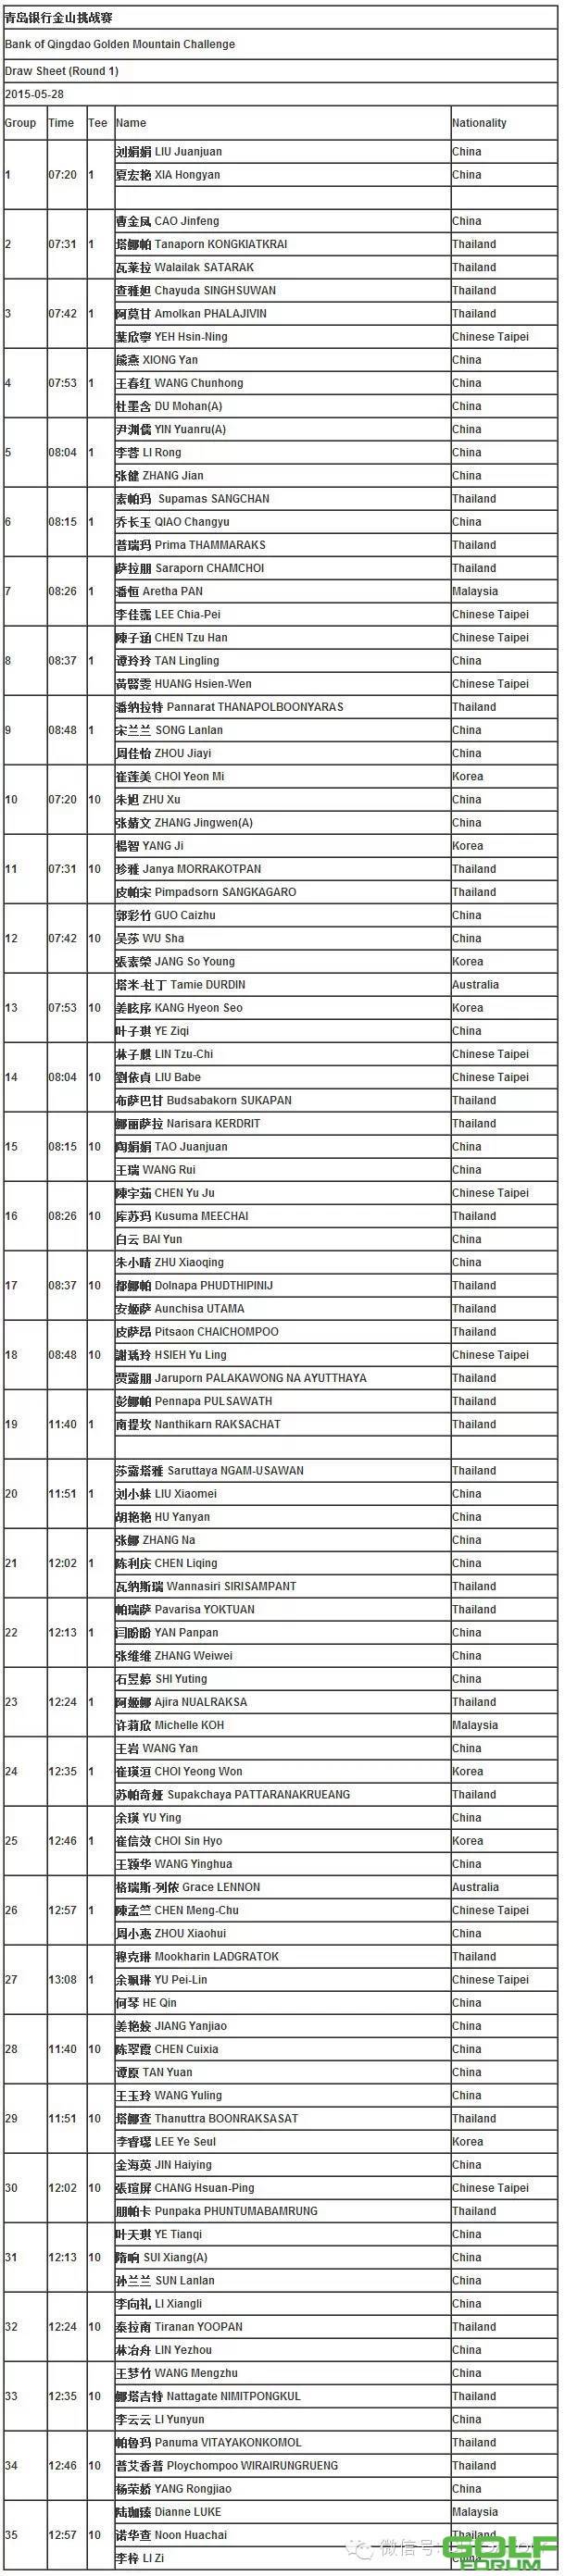 【赛事服务】2015青岛银行·金山挑战赛首轮分组表